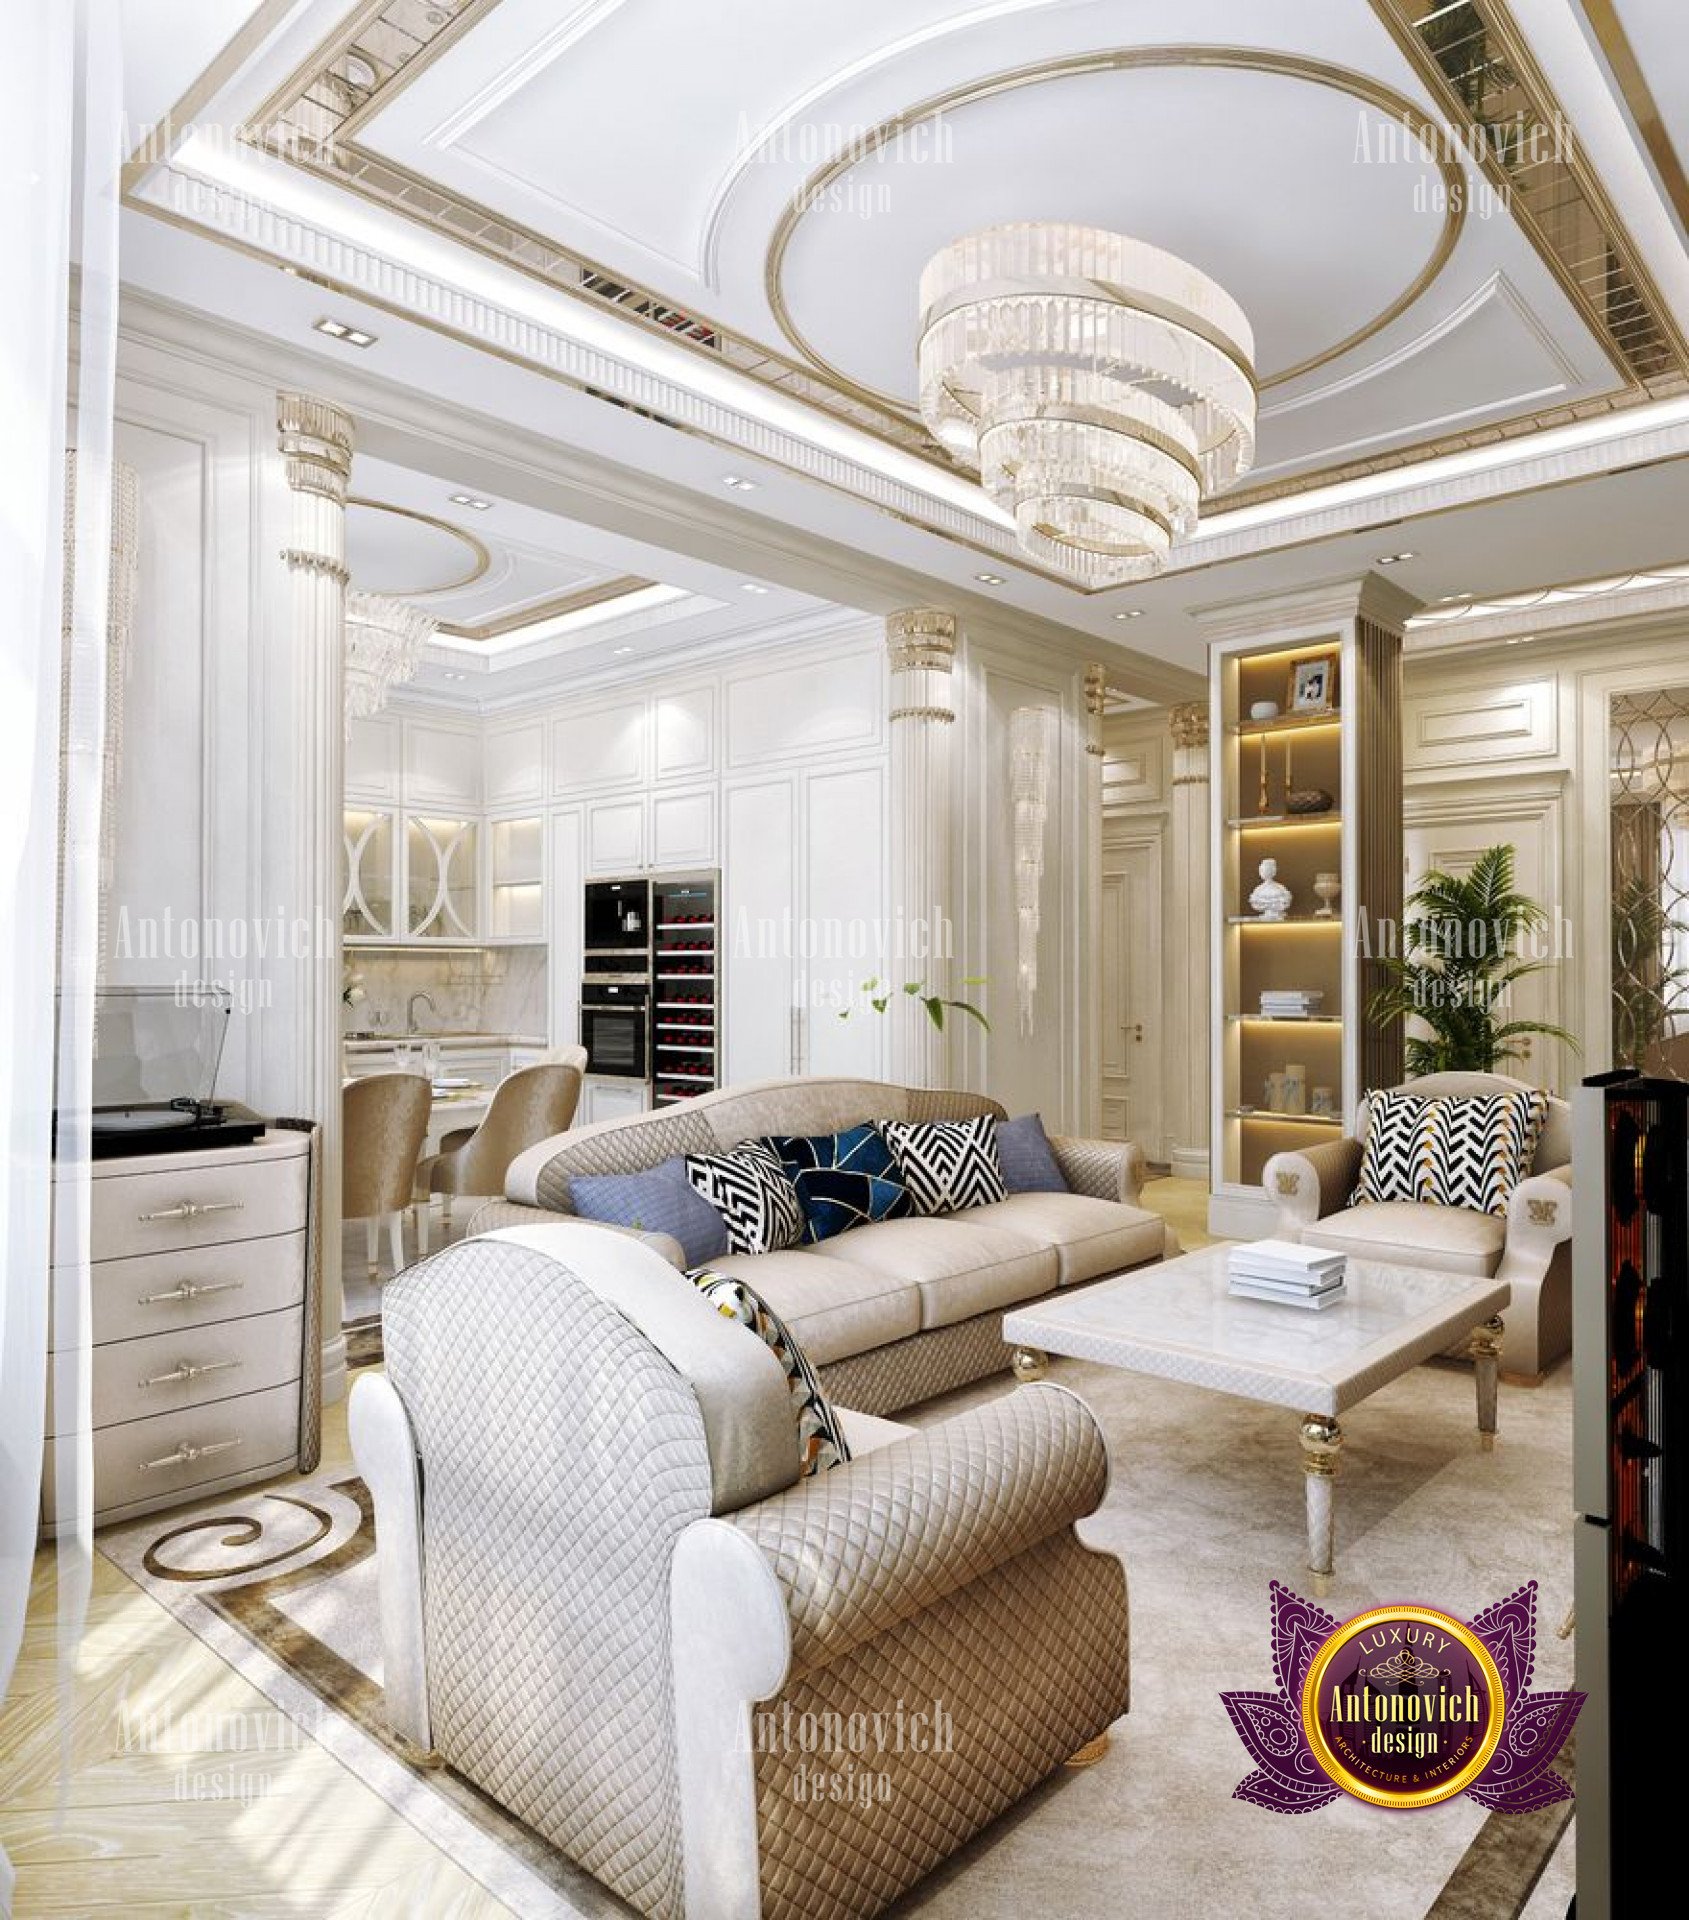 Modern home interior - luxury interior design company in ...